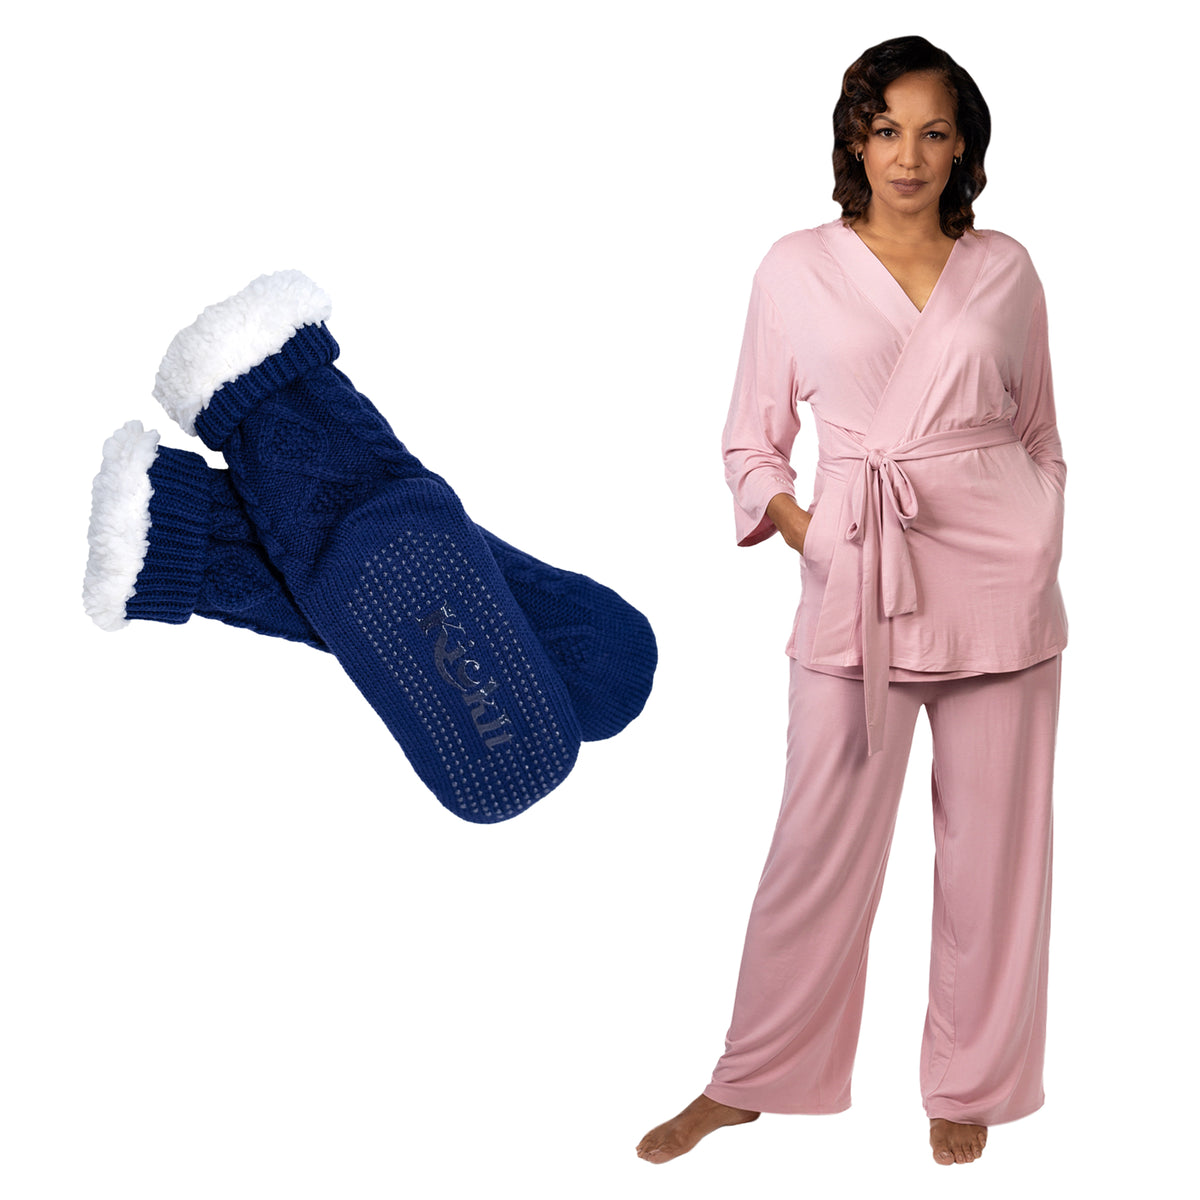 KickIt Mastectomy Pajamas Bundle - Rose Pink